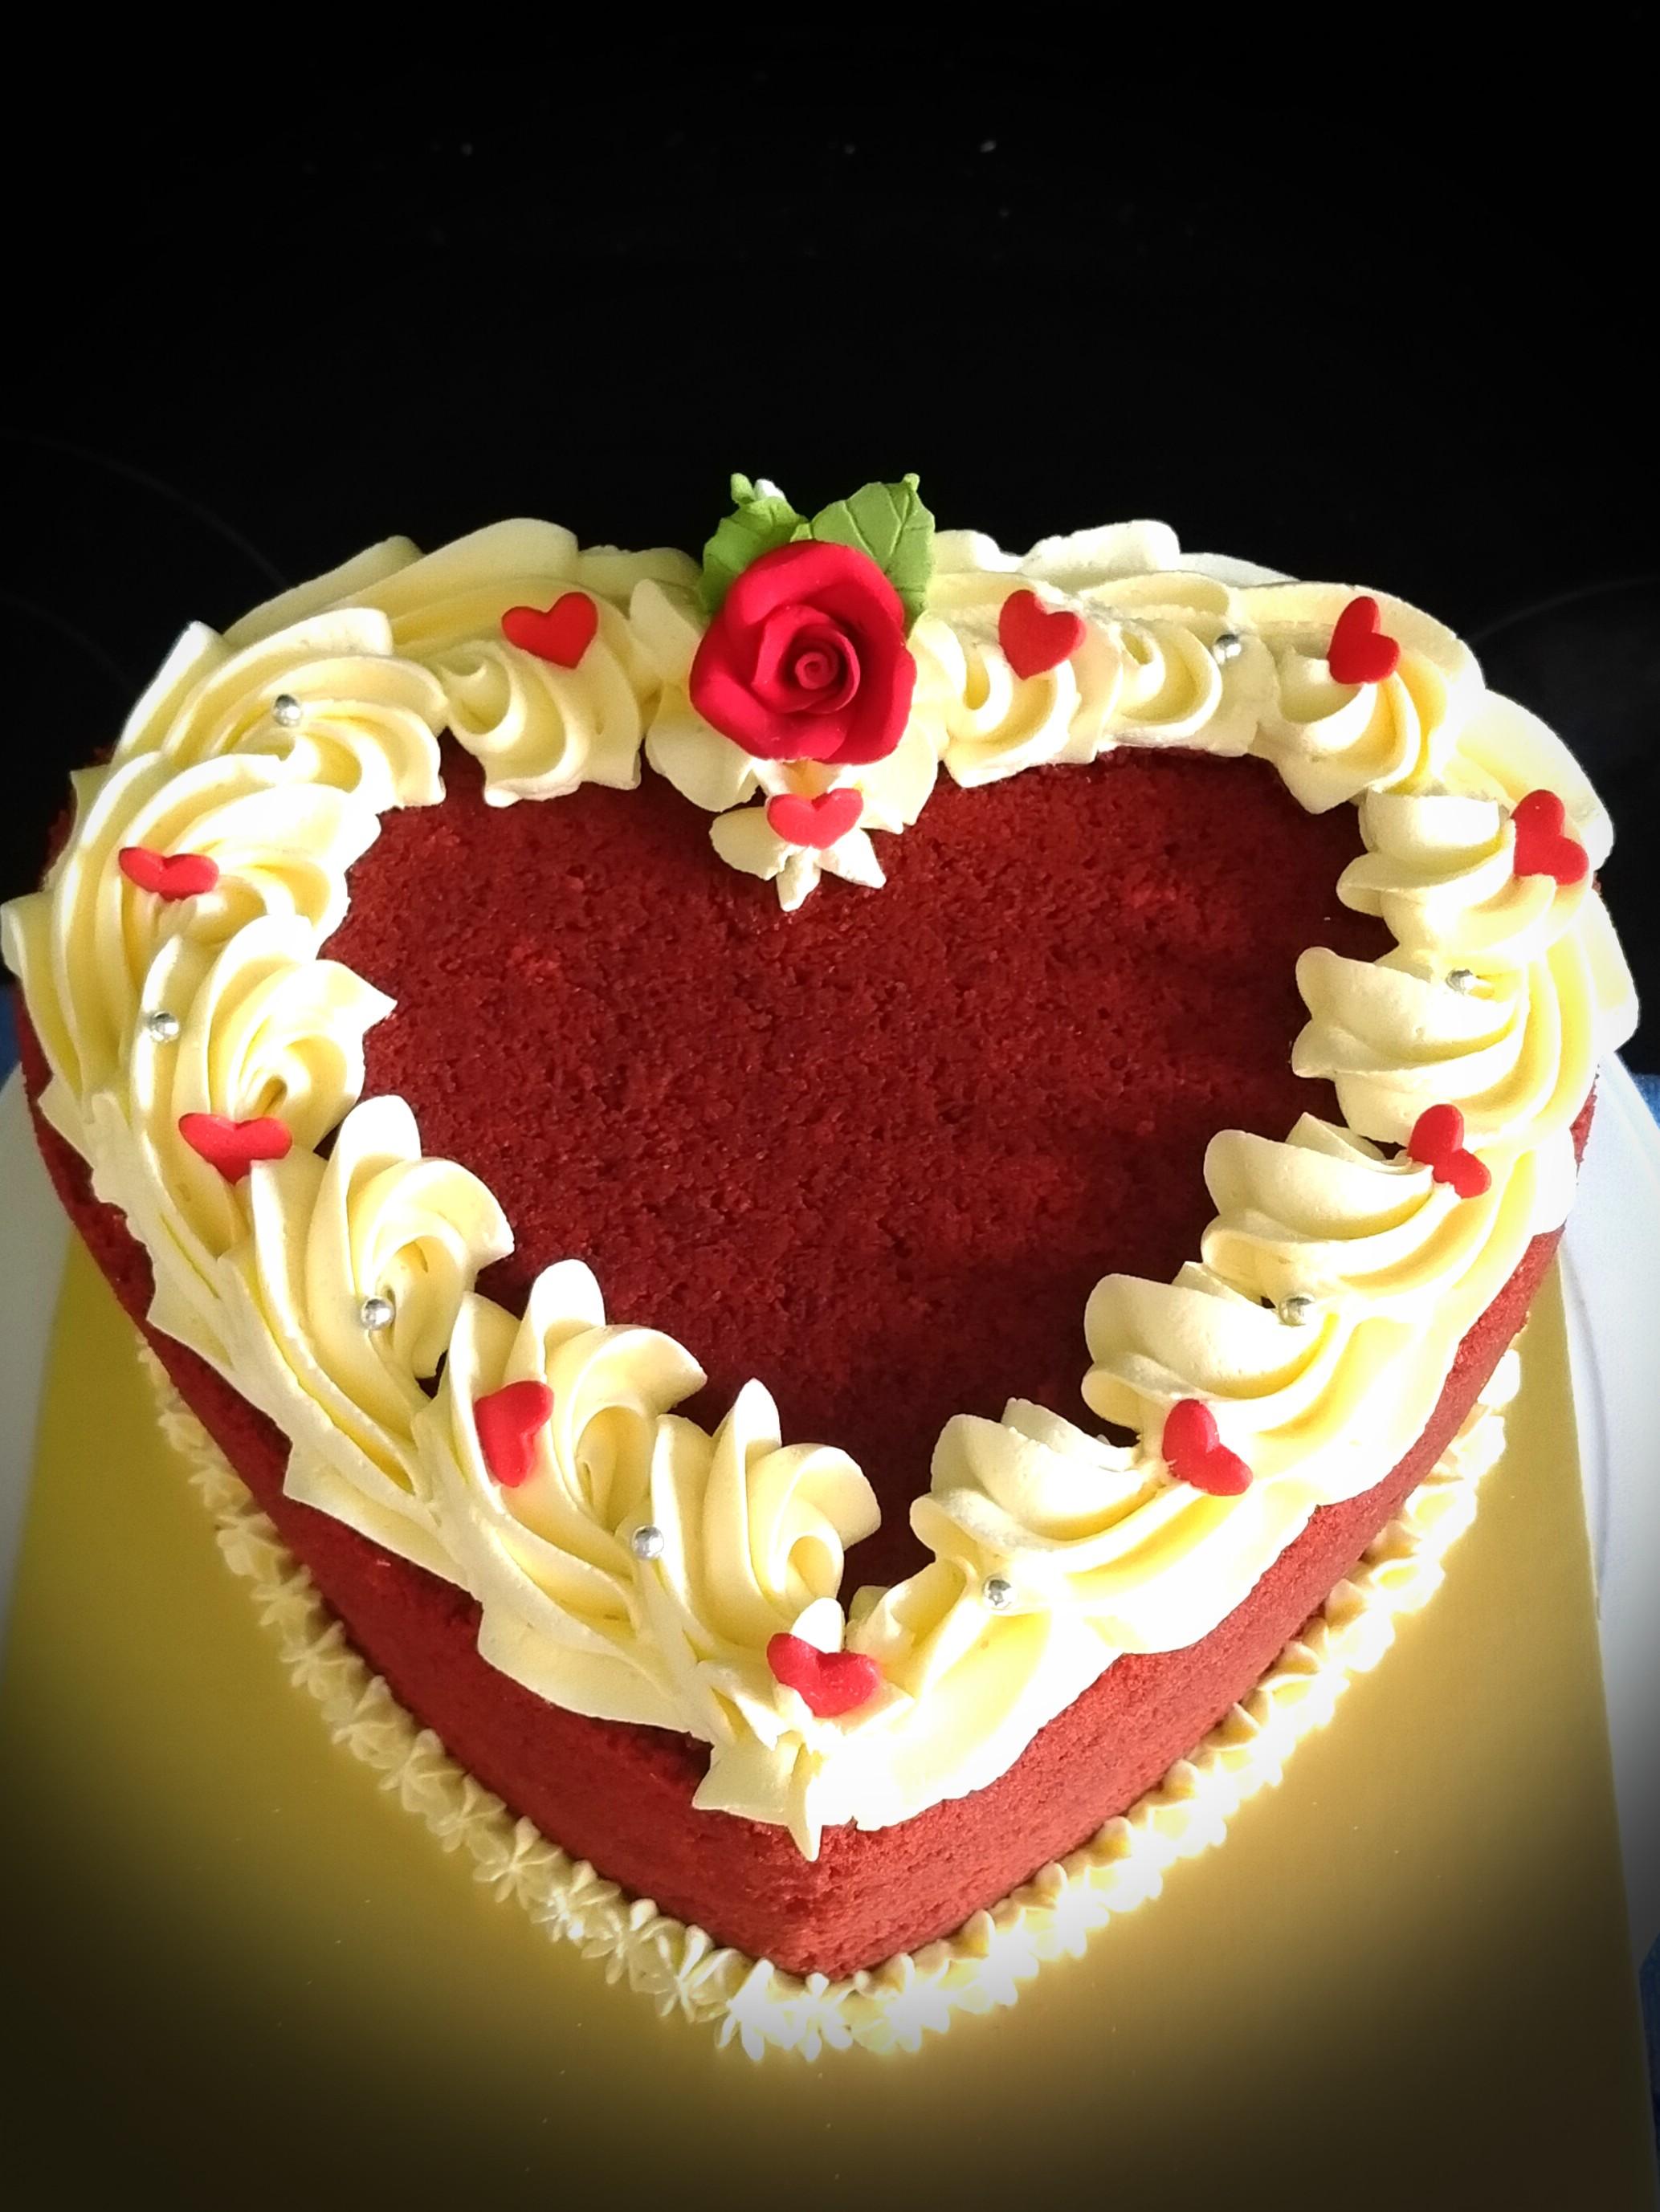 Red Heart Gel Cake -Water Droplet Effect | Heart Shape Red Velvet Cake  Design | Romantic Cake Design | Unique recipes, Unique cakes, Heart cake  design